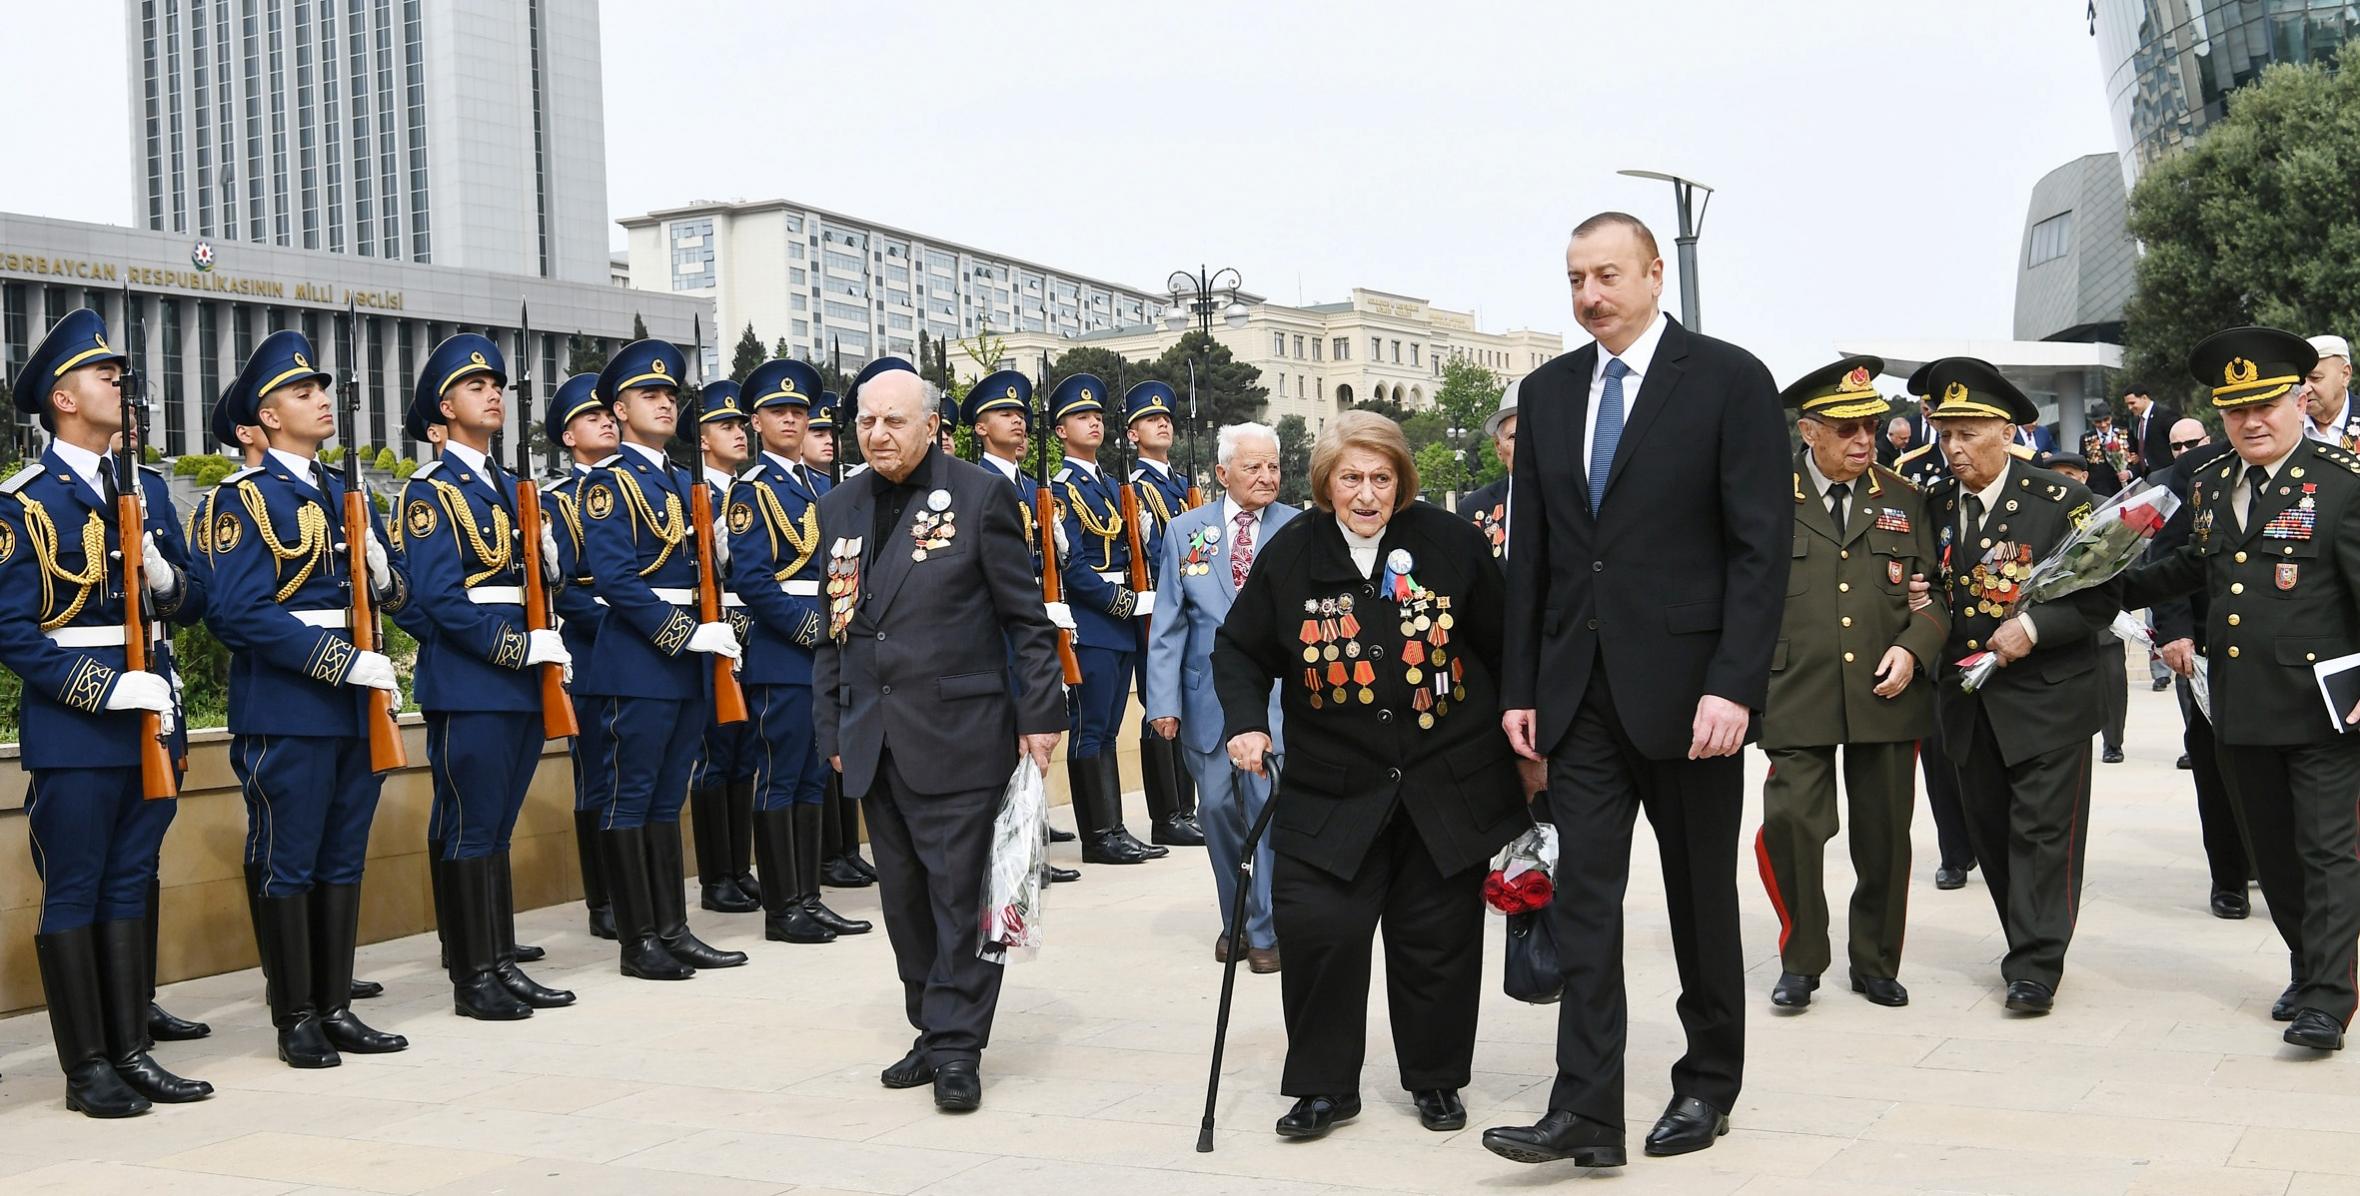 Ильхам Алиев принял участие в проведенной в Баку церемонии по случаю 9 Мая – Дня Победы